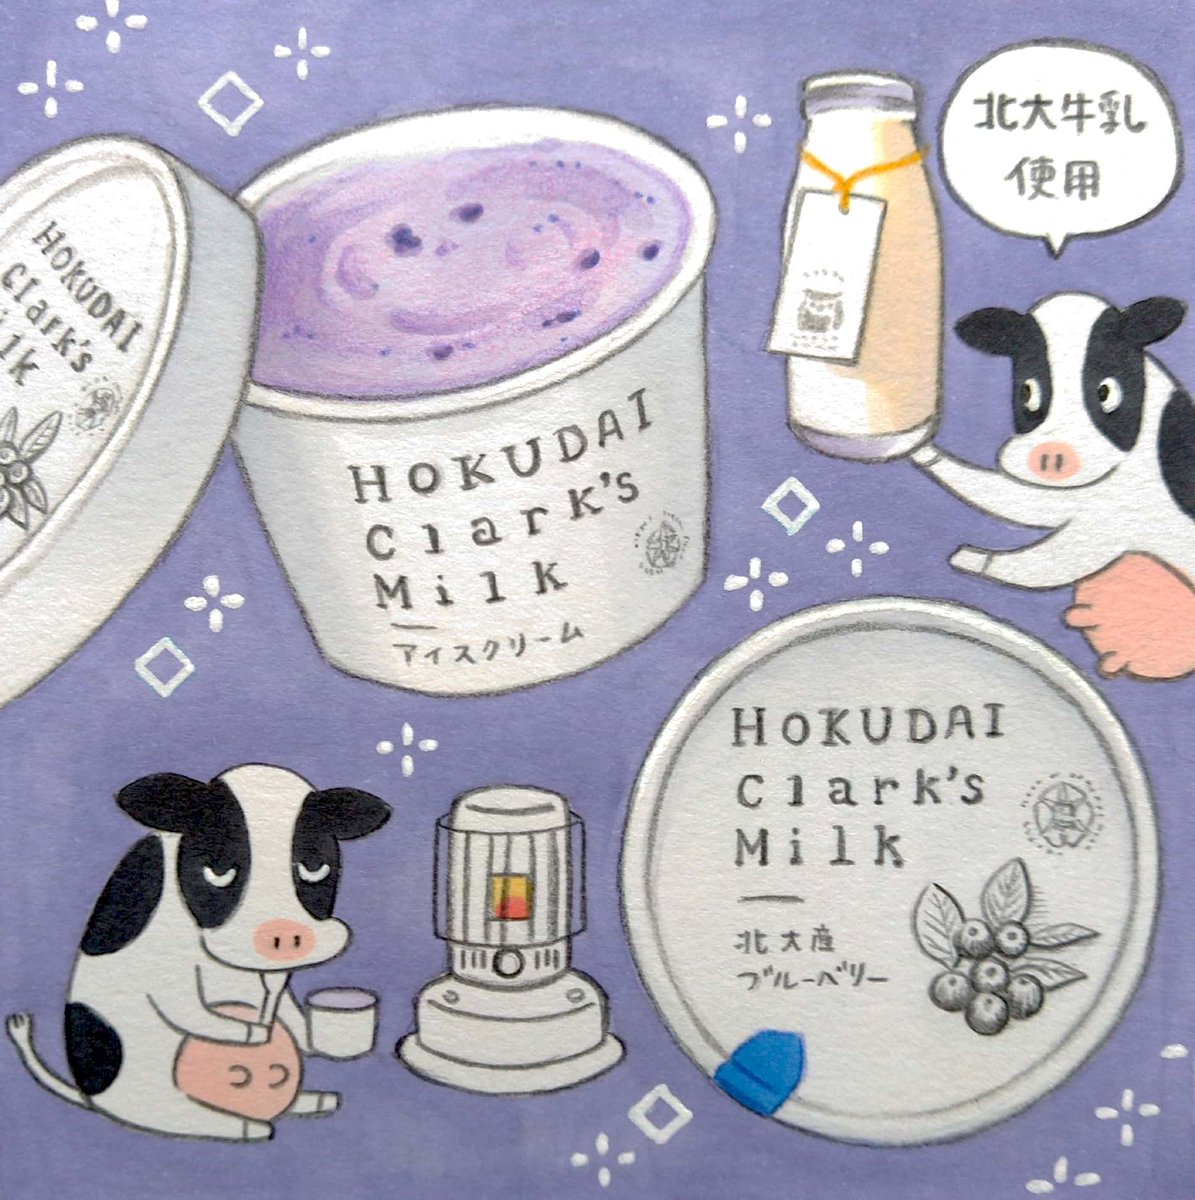 北大マルシェ「HOKUDAI Clark's Milk」のアイスクリーム
#田島ハルのくいしん簿 #北海道 #イラスト #食べ物イラスト 